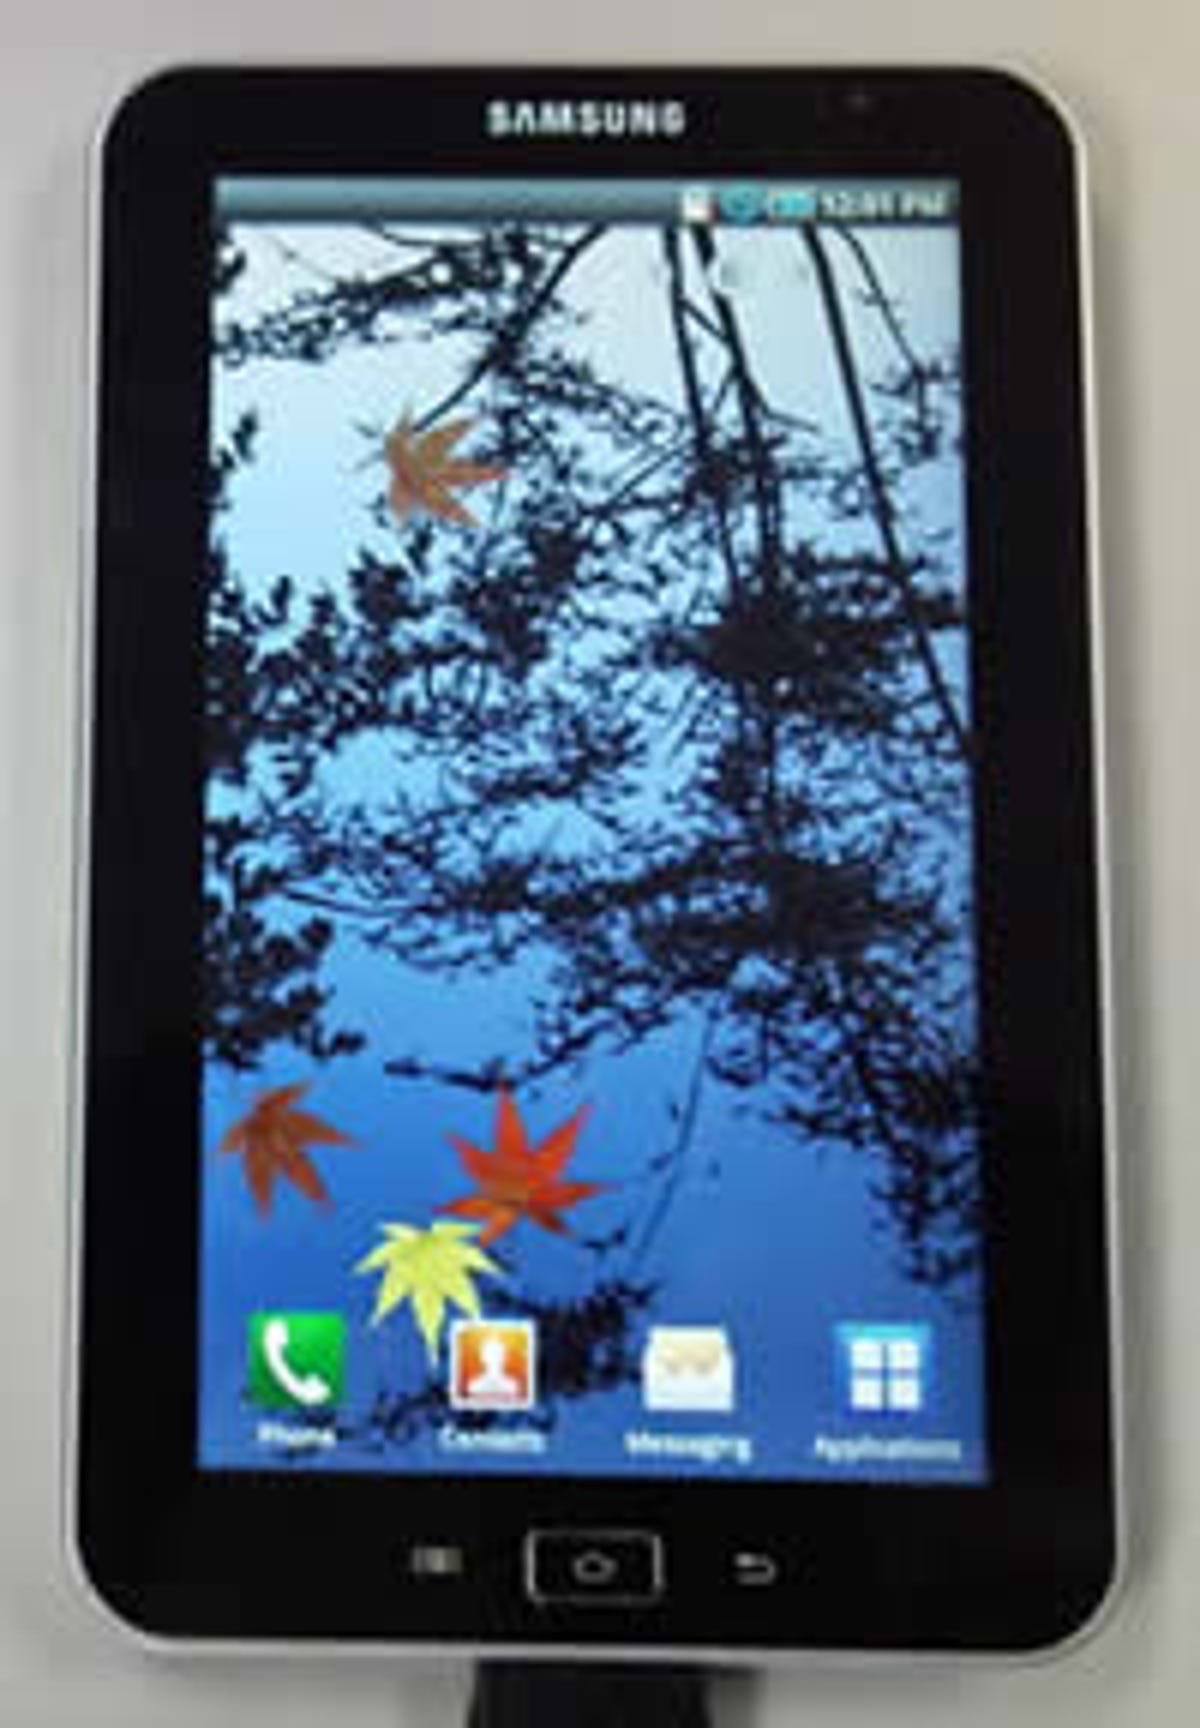 Samsung's upcoming Galaxy Tab tablet.